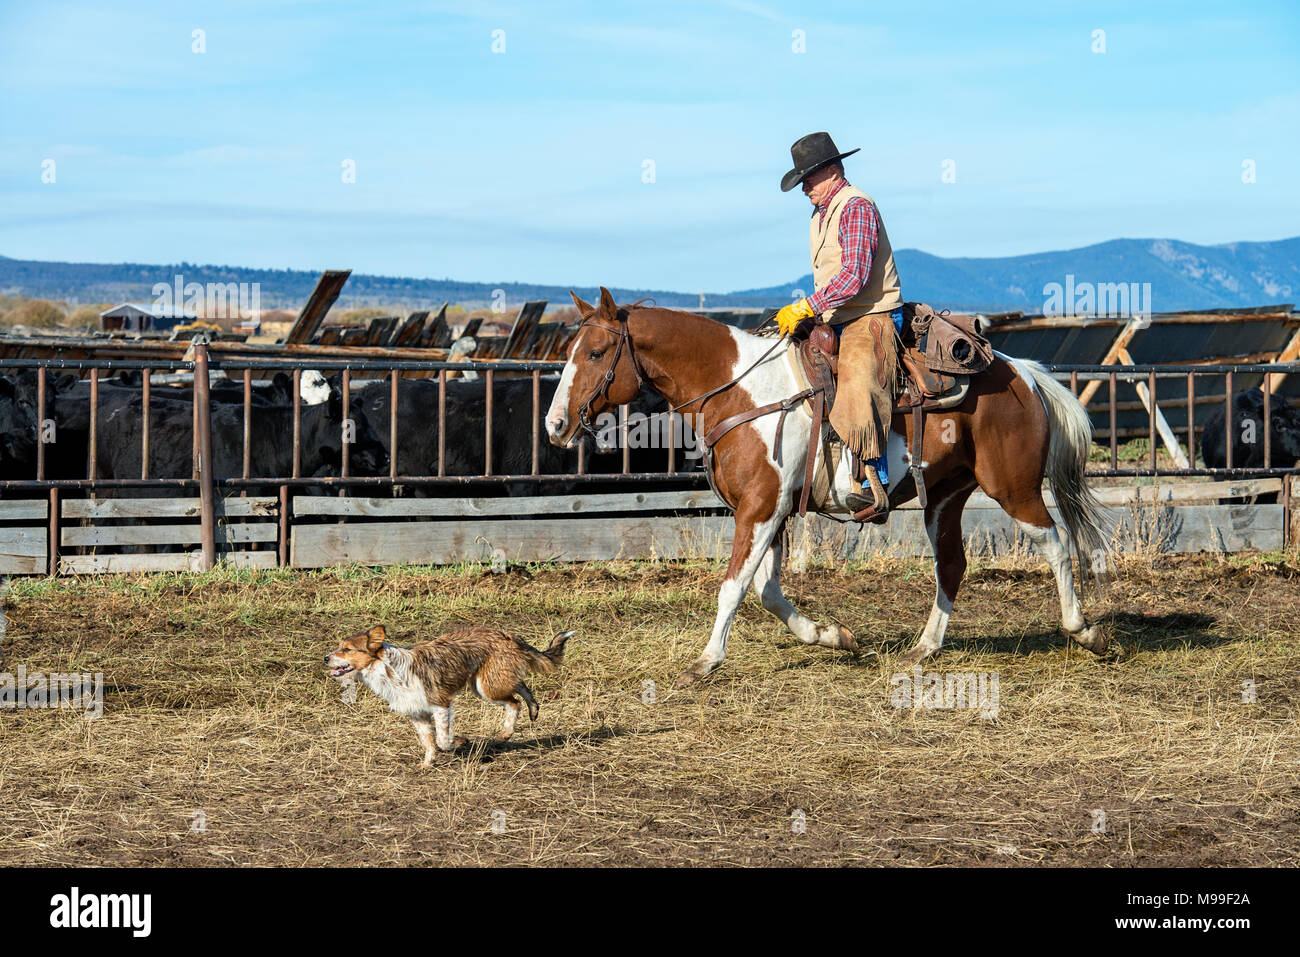 American Cowboy riding horse dans l'ouest des États-Unis. Chien suivant. Beaverhead Comté, Big Hole Valley, Montana. Banque D'Images